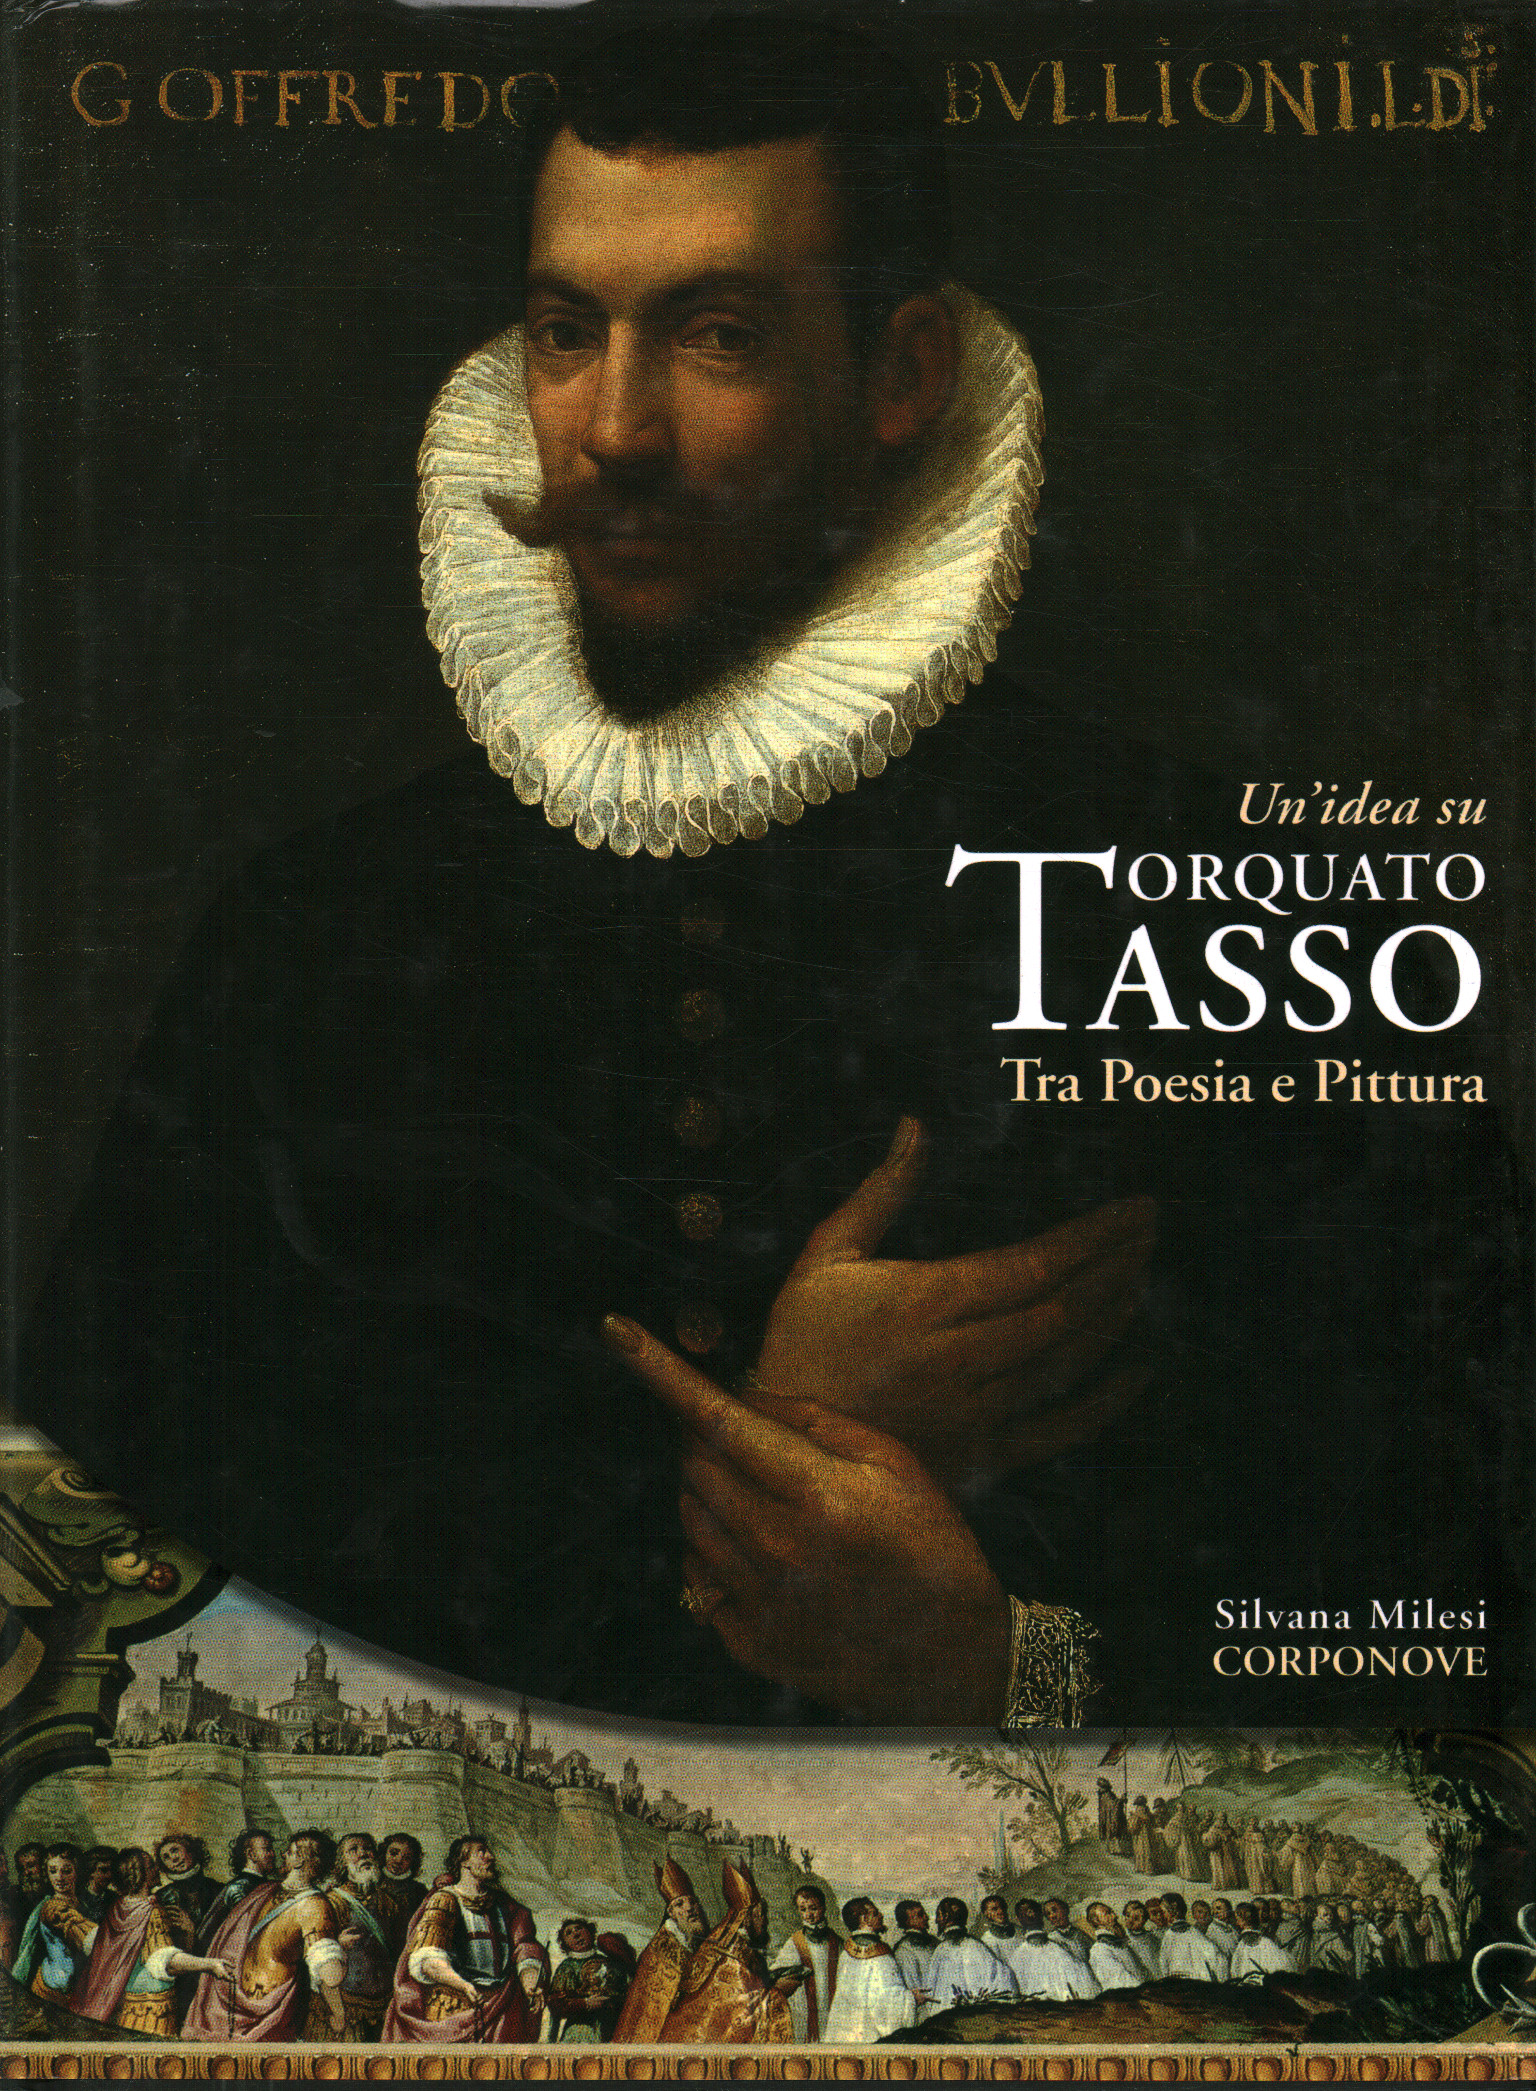 Una idea sobre Torquato Tasso. Entre la poesía y la pintura, Silvana Milesi